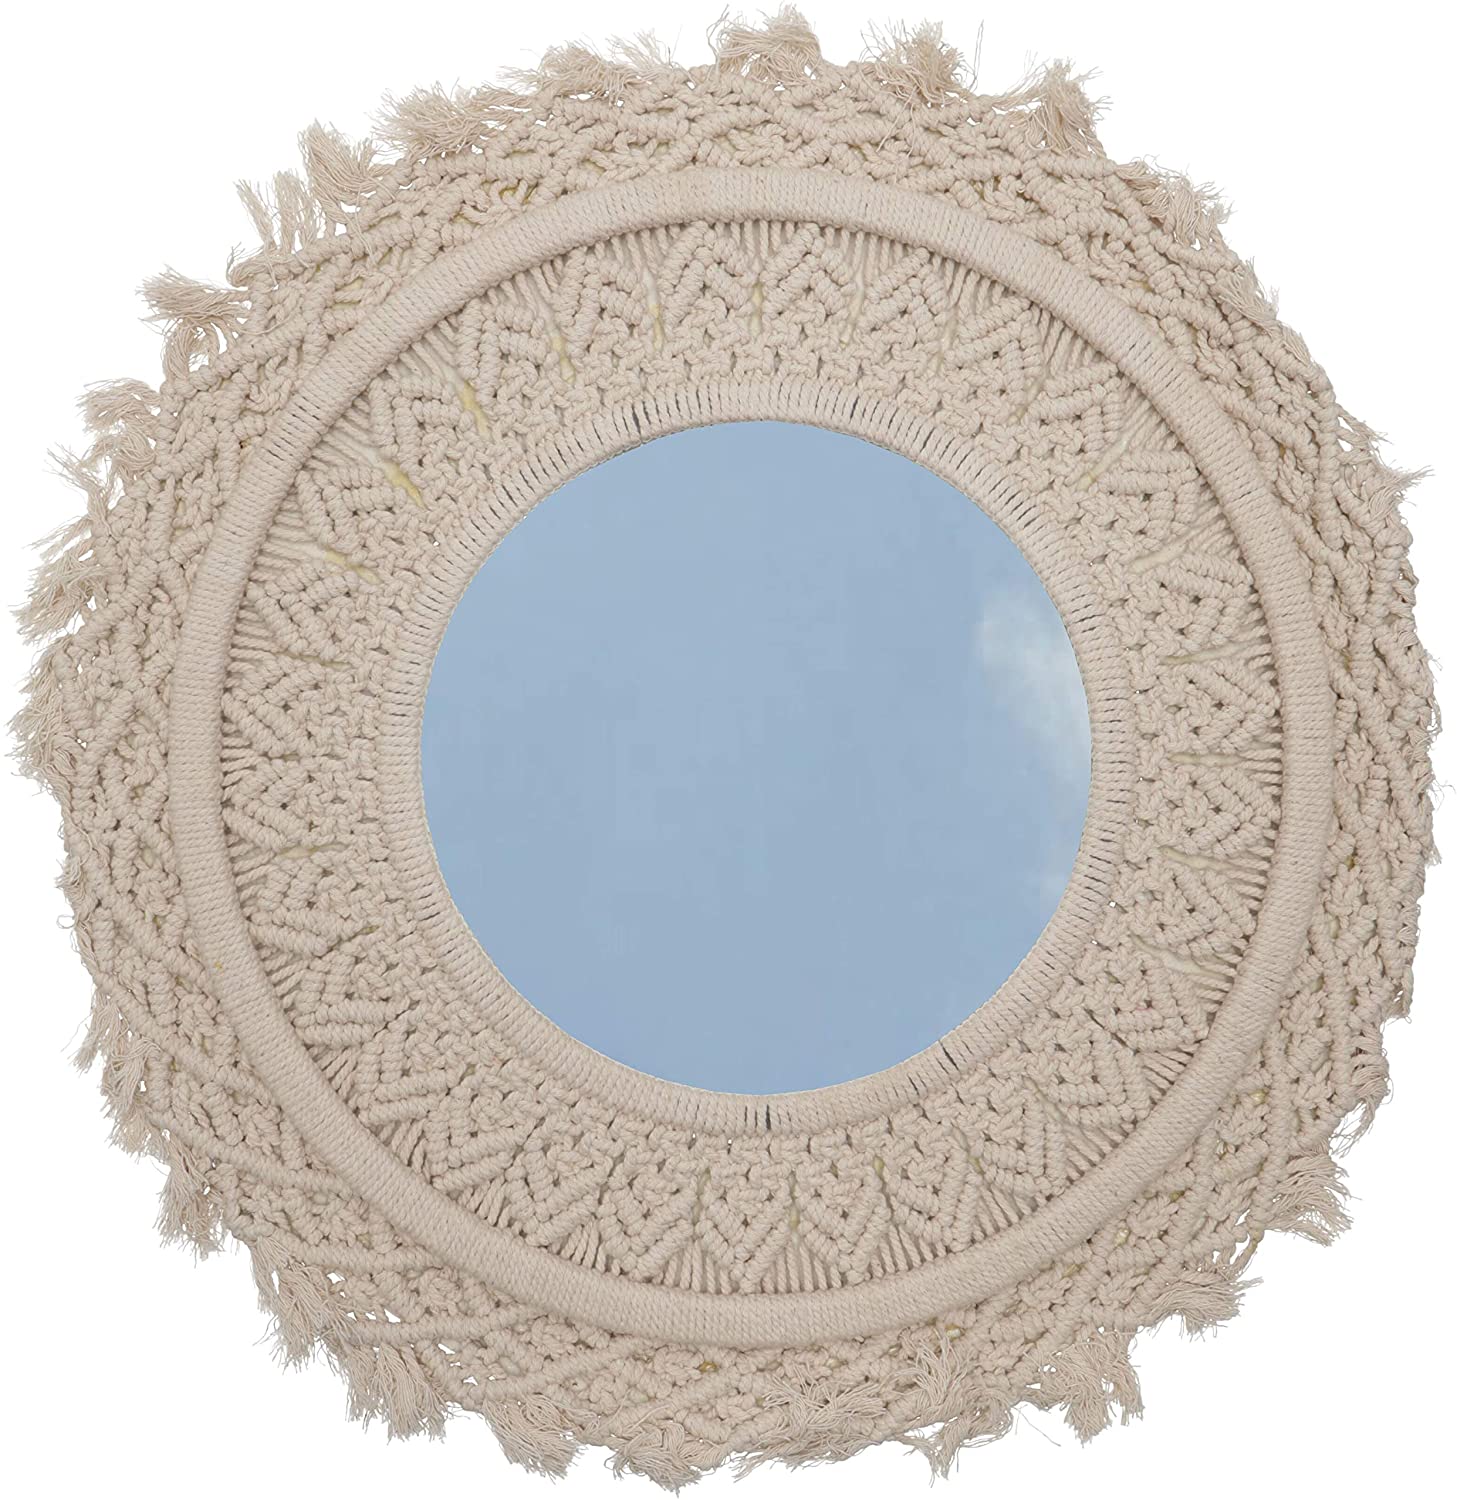 Guru-Shop Mirror With Stitched Frame Macrame Round Cotton Thread 50 X 50 X 